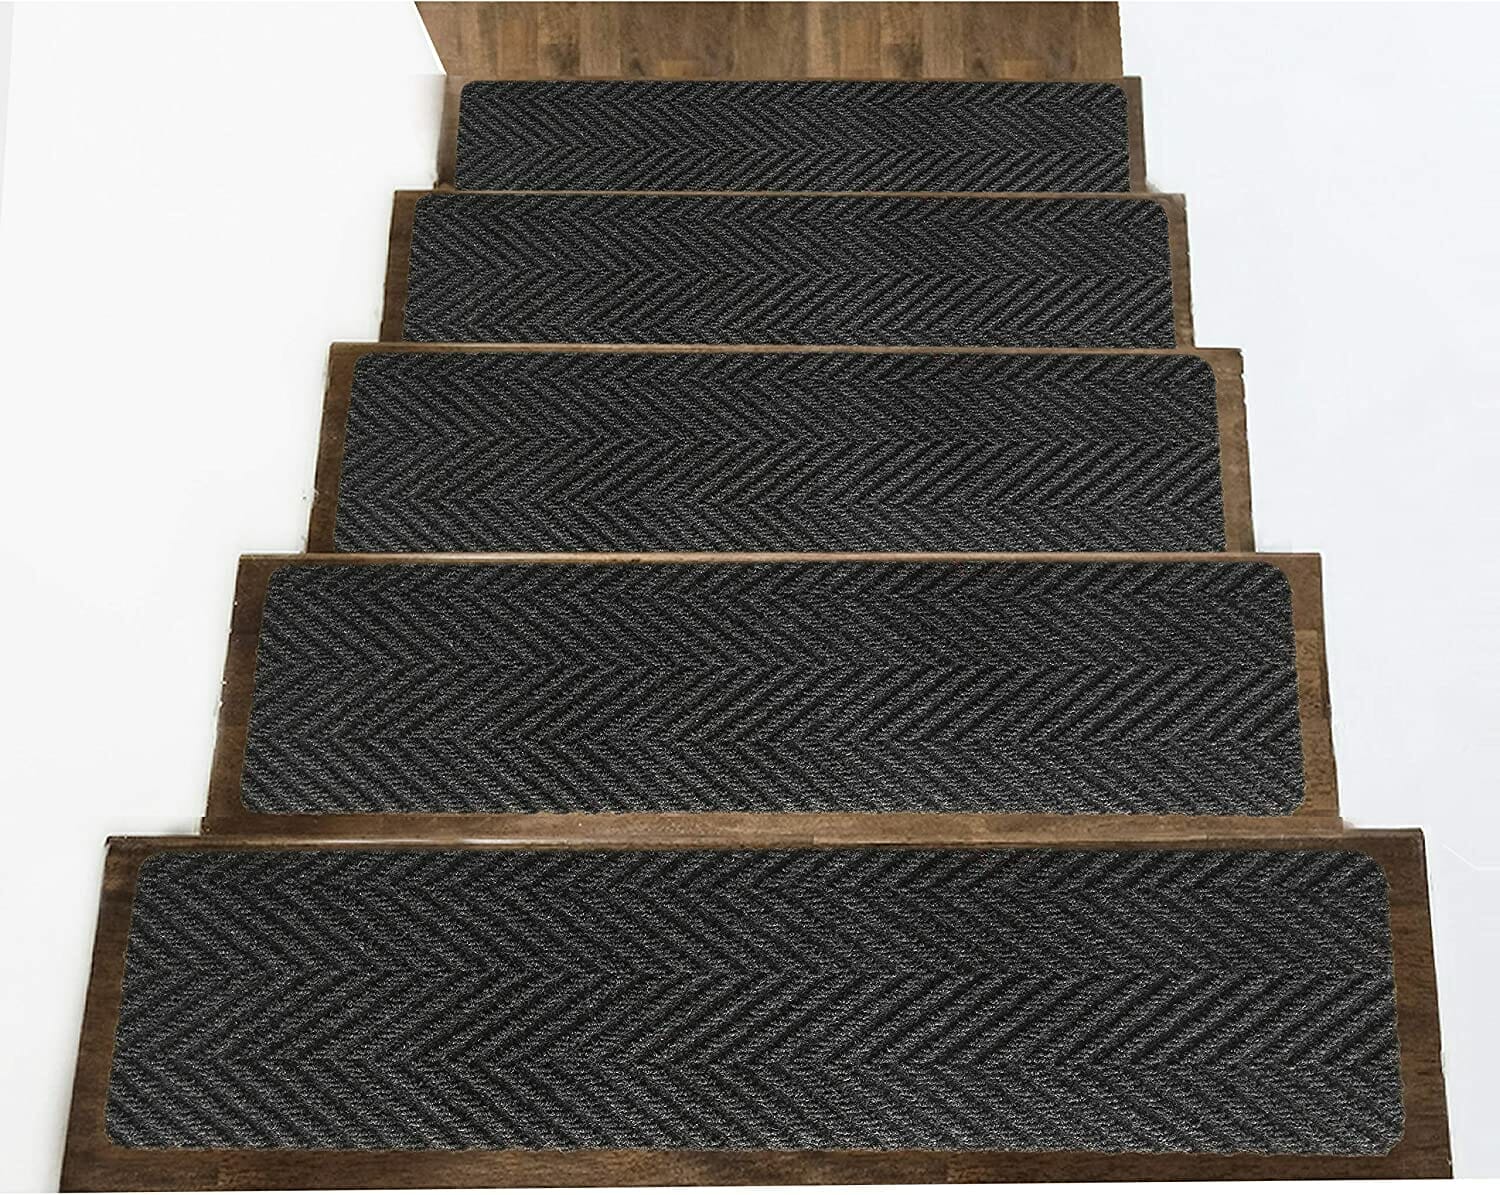 Jorviz Indoor and Outdoor Carpet Stair Treads - Best for Versatility